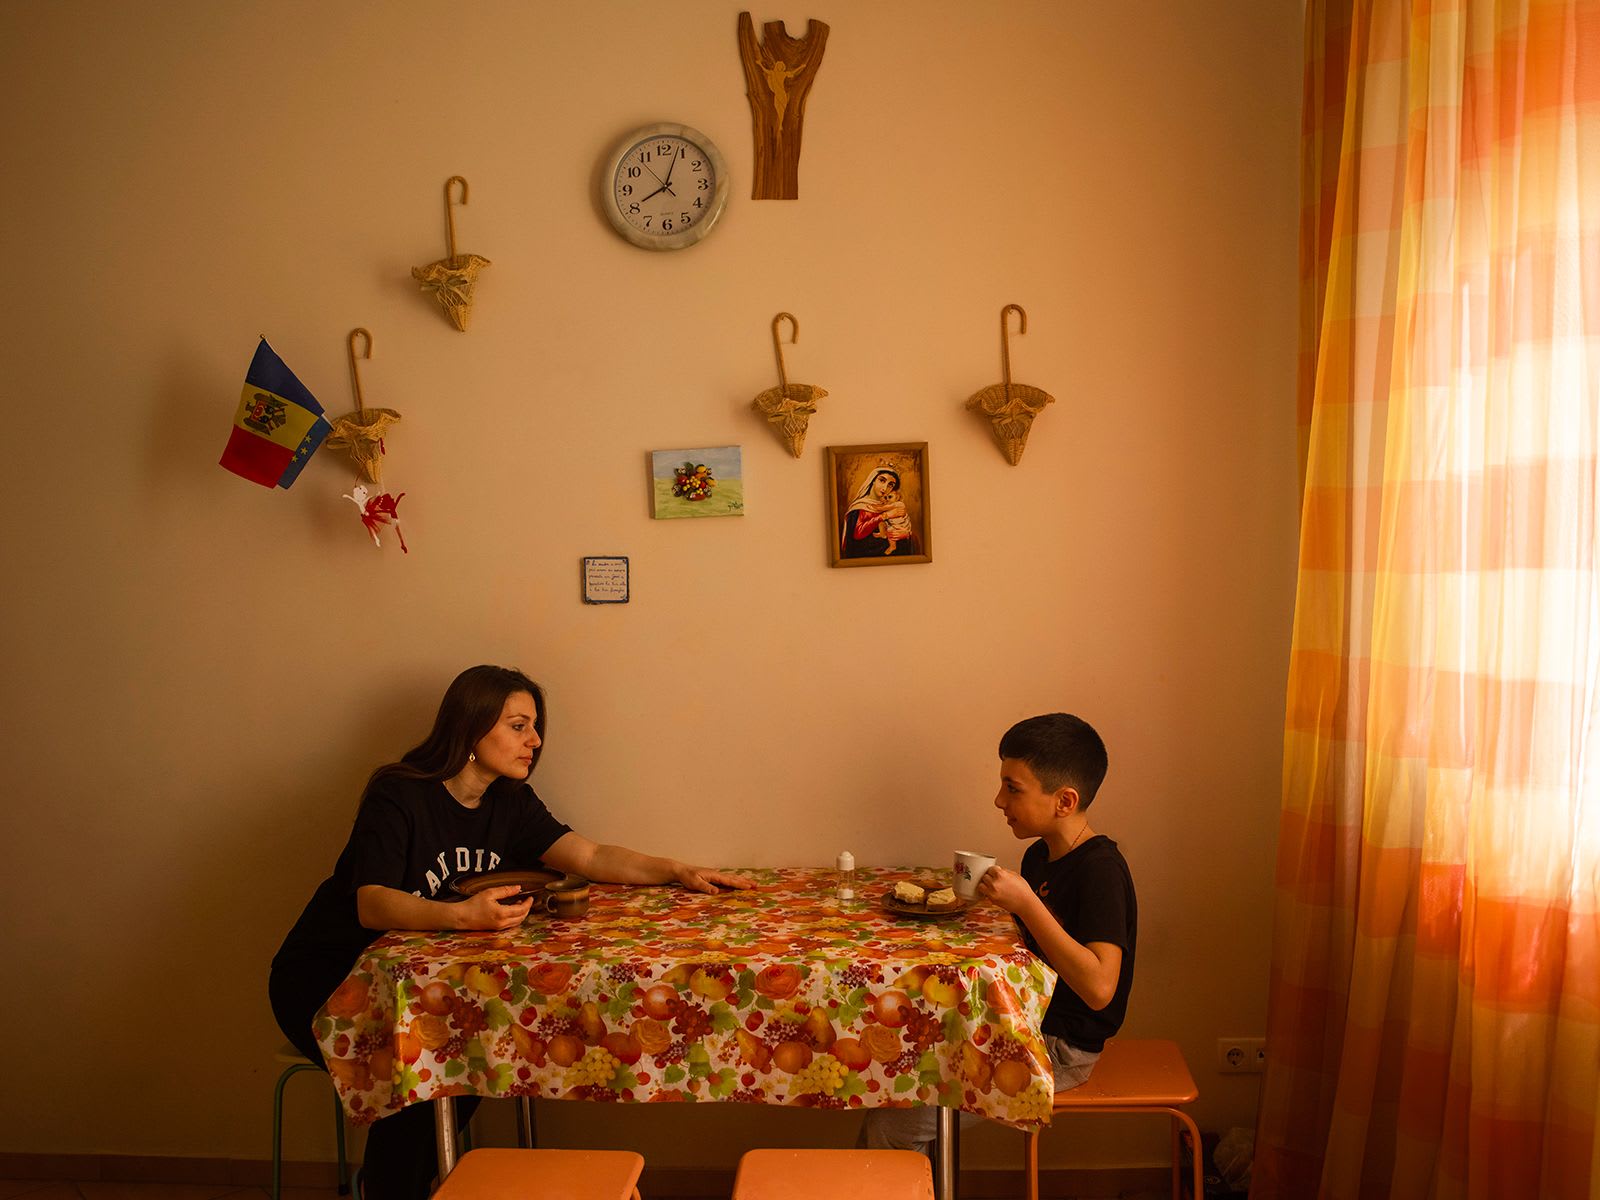 توثيق حياة أمهات غادرنا أوكرانيا عنوة